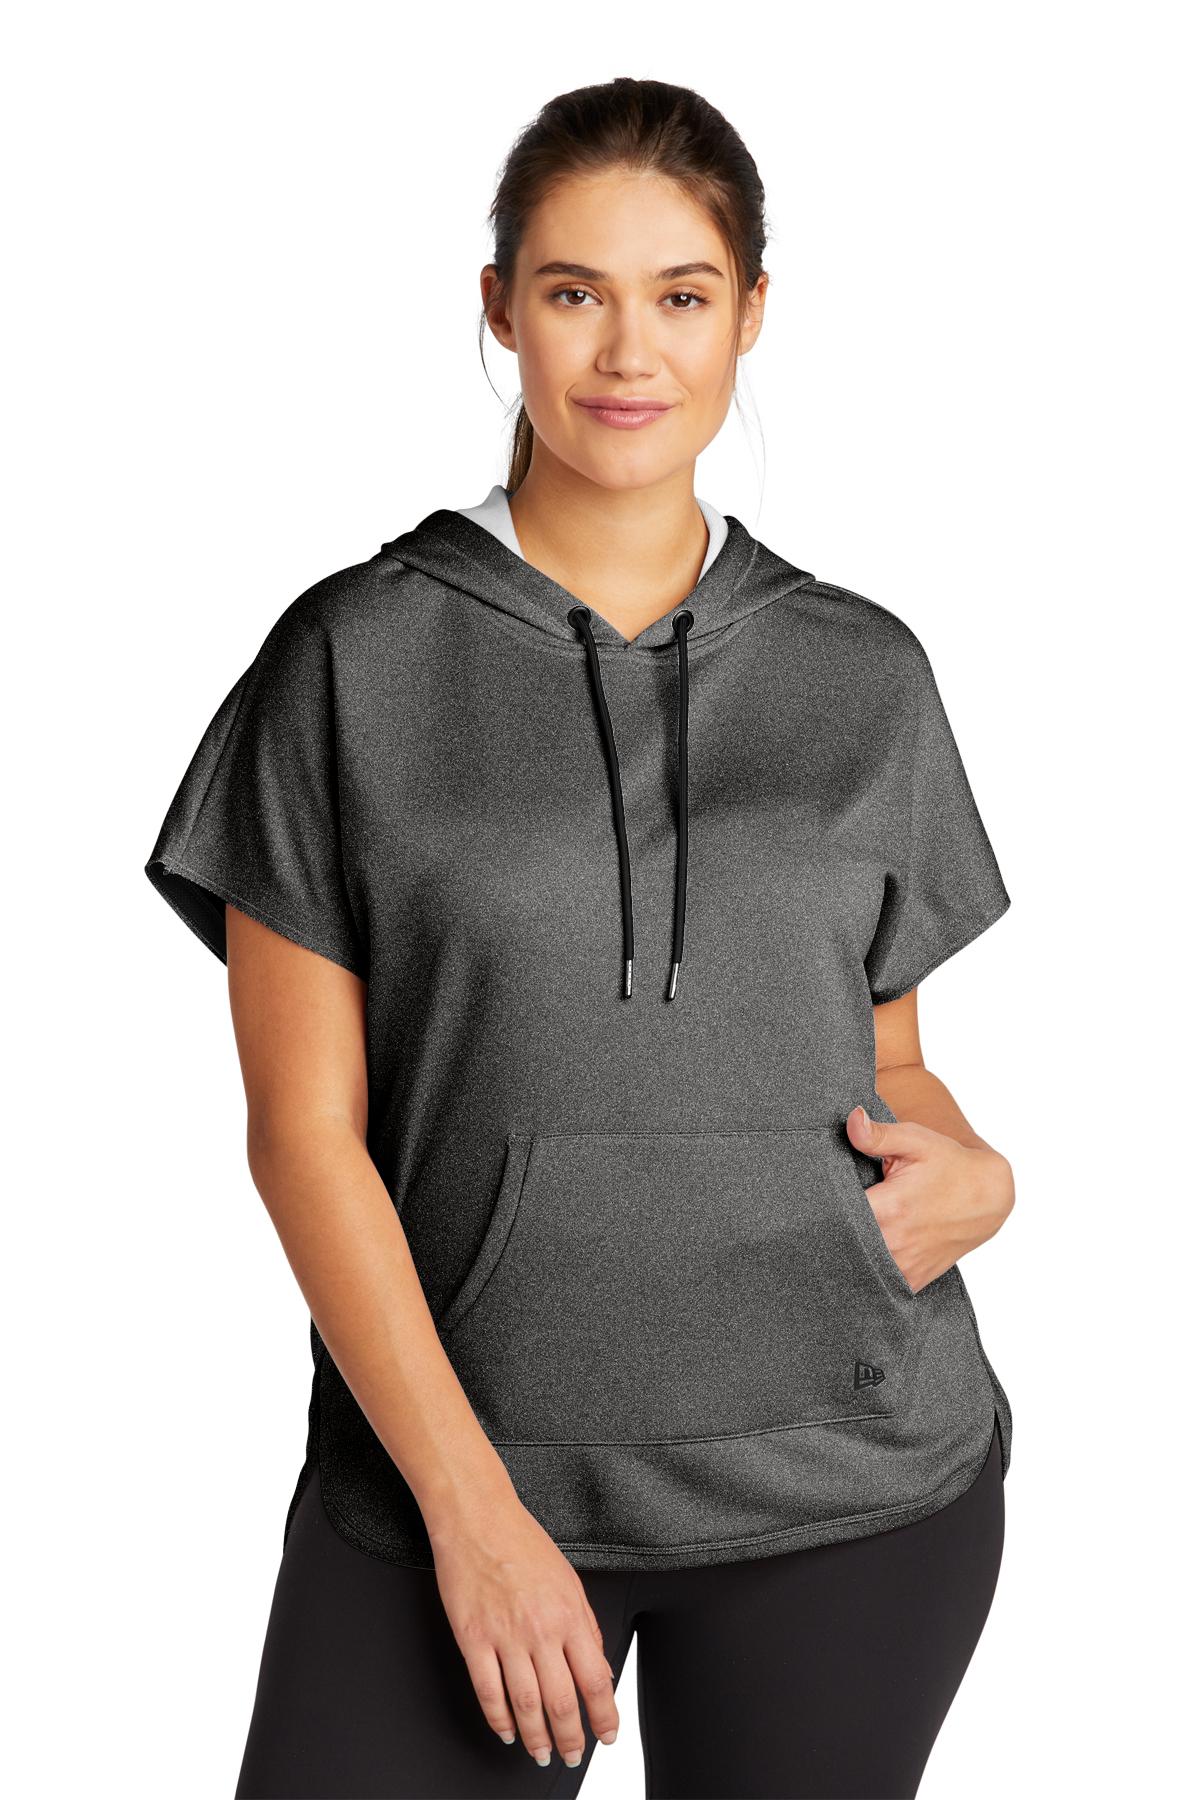 Women's Concepts Sport Oatmeal Anaheim Ducks Tri-Blend Mainstream Terry Short Sleeve Sweatshirt Top Size: Medium